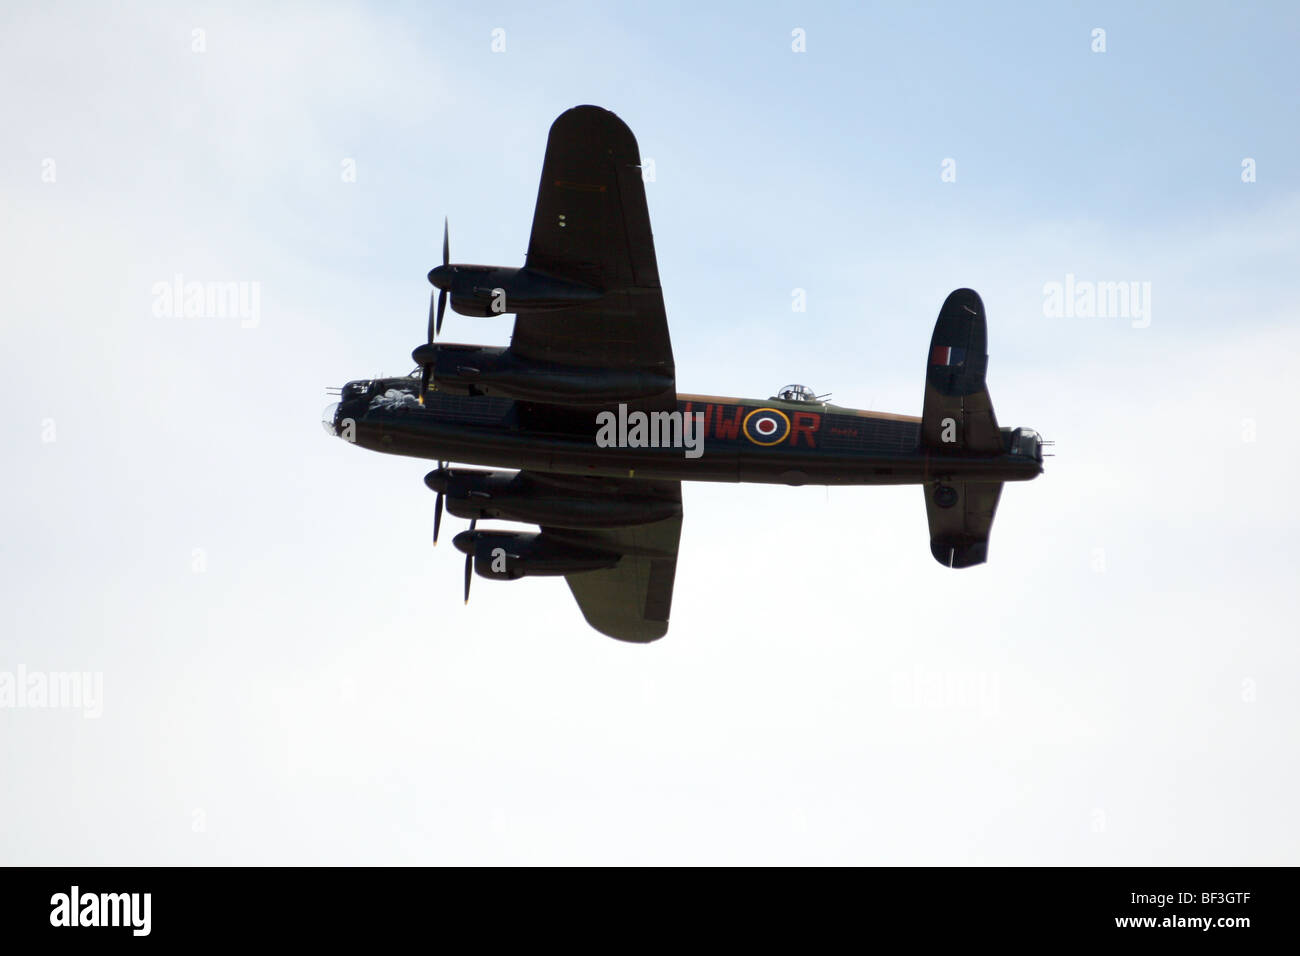 Le célèbre bombardier Avro Lancaster qui a été construit par Avro un avion britannique fabricant. Banque D'Images